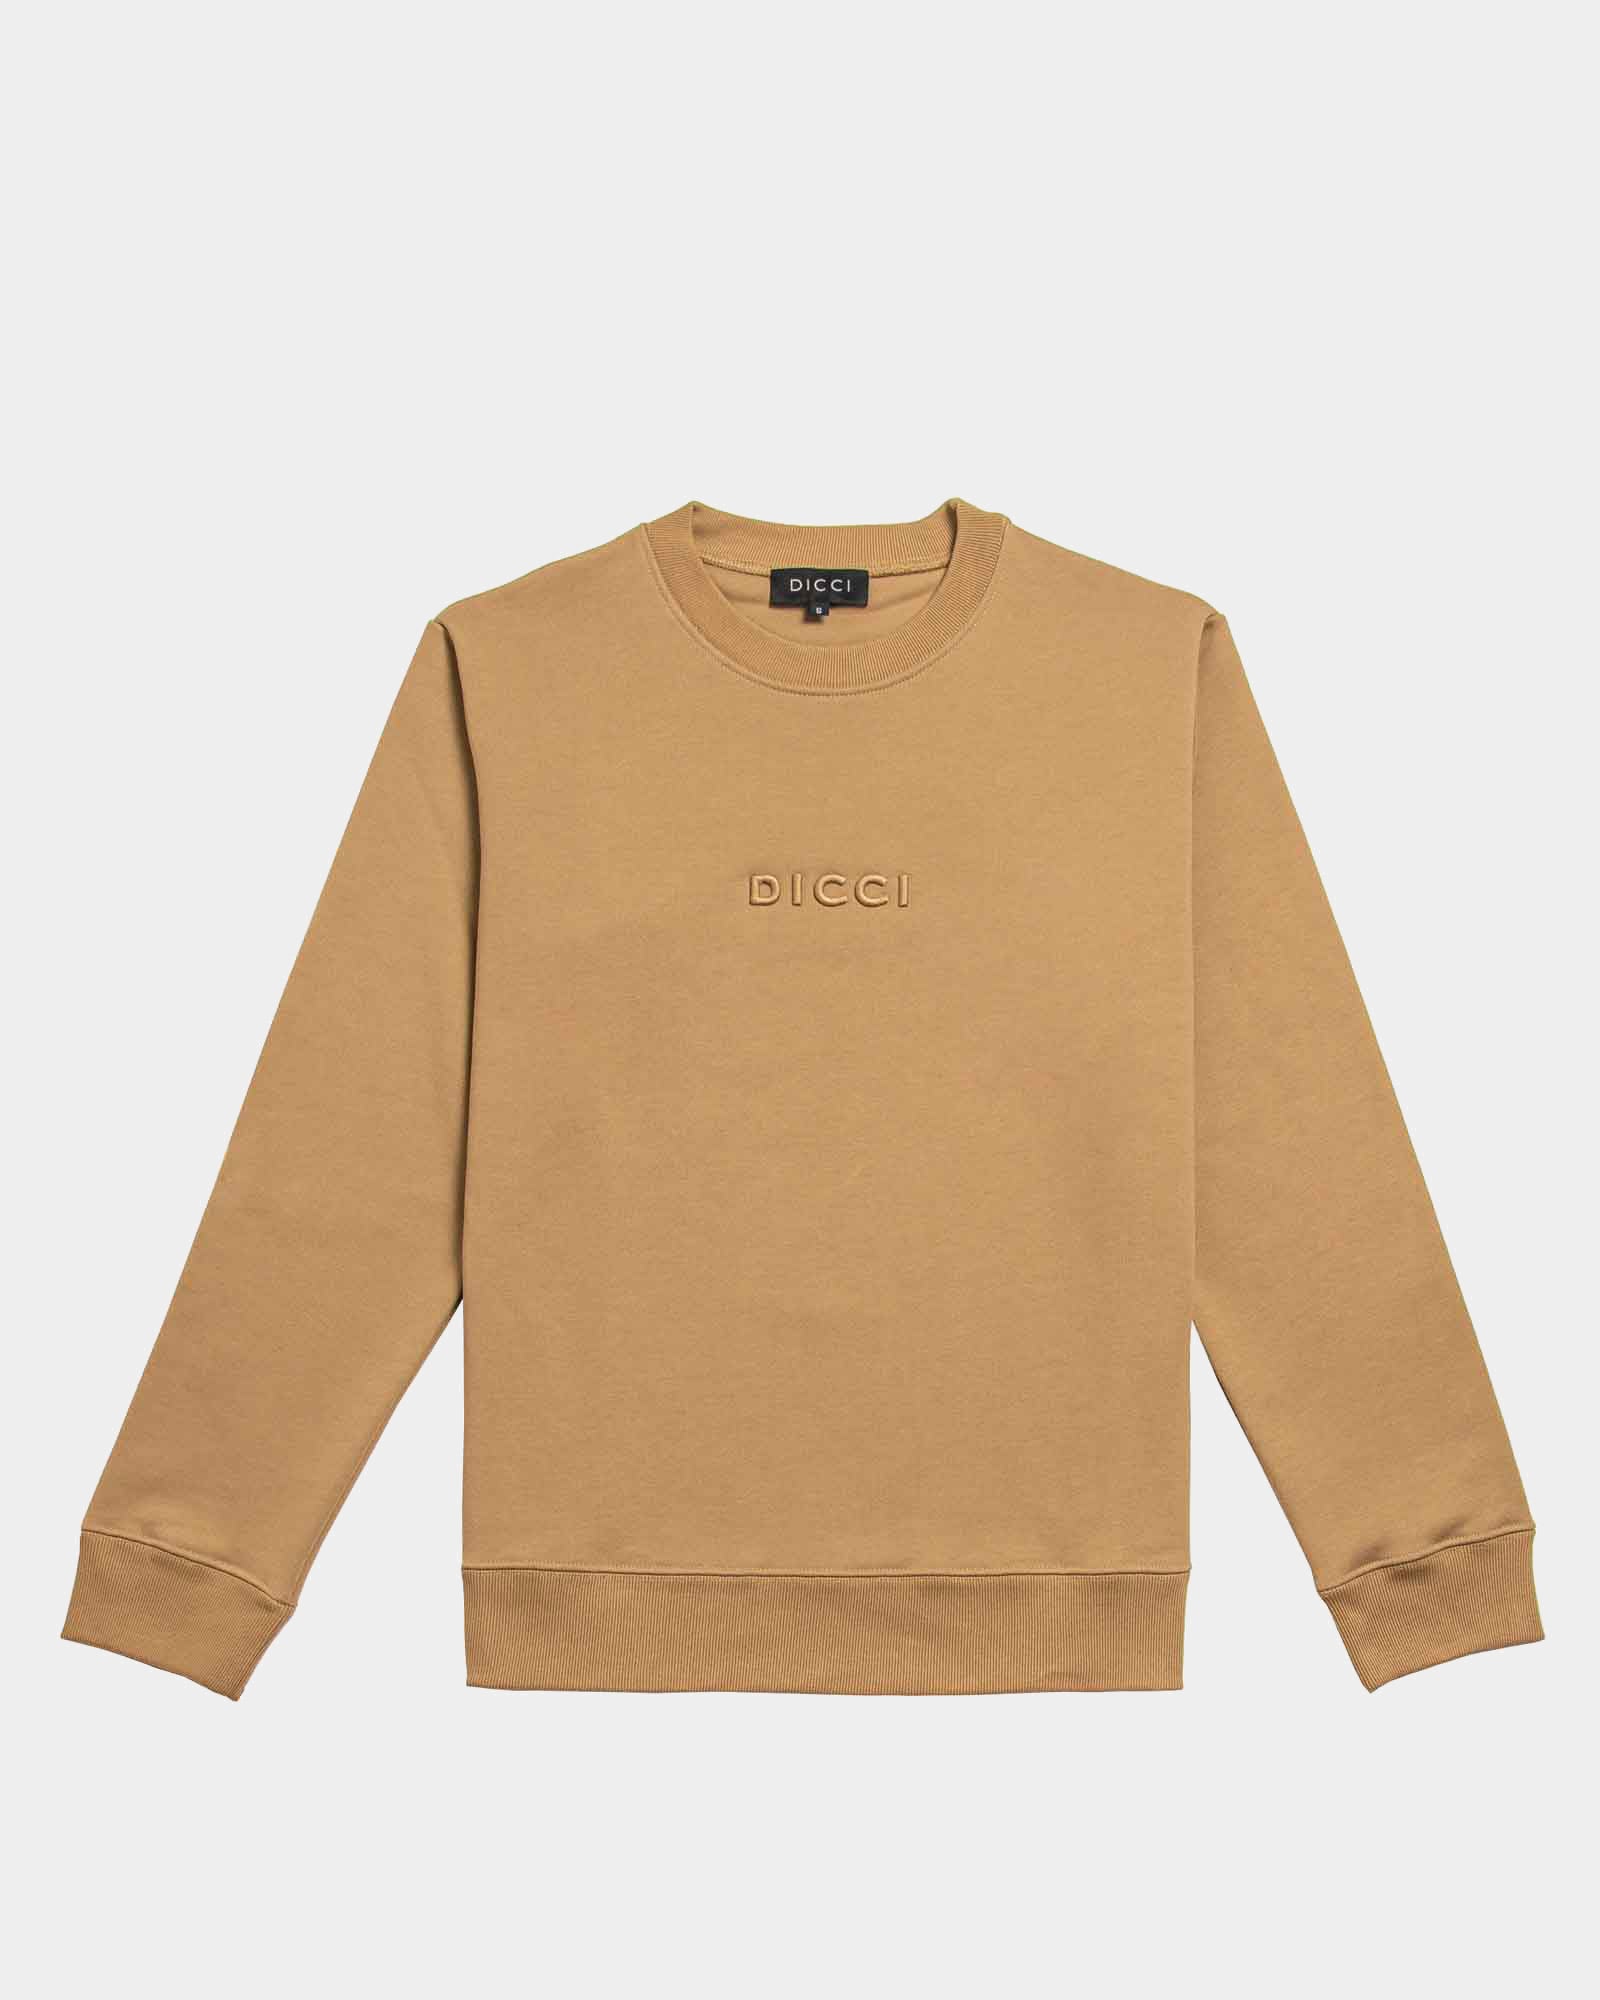 Camel Sweatshirt with embossed logo - Unisex Clothing - Dicci